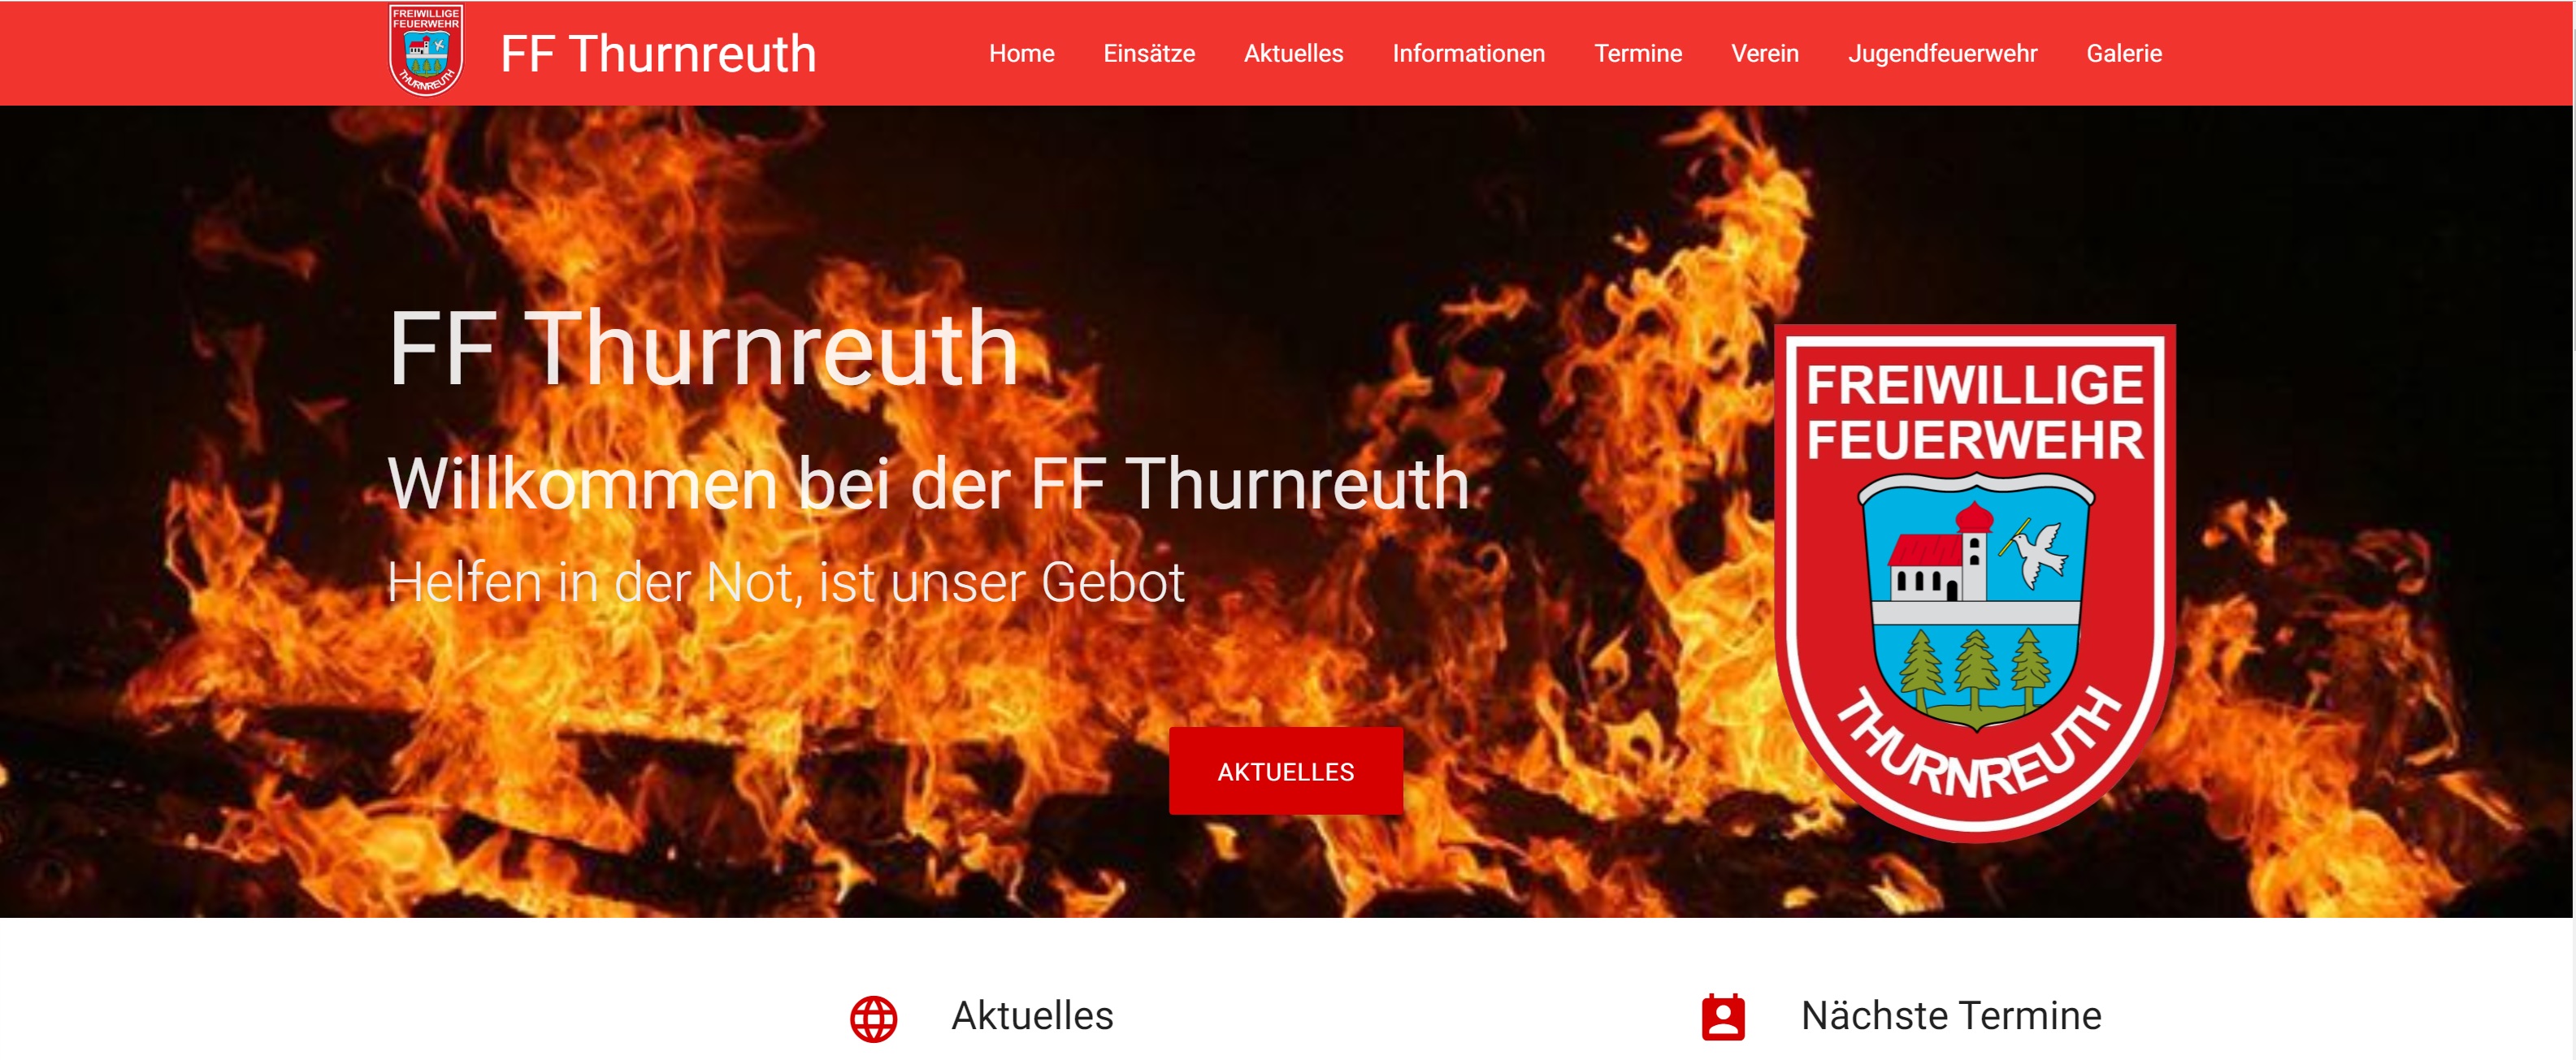 Startseite der FF Thurnreuth